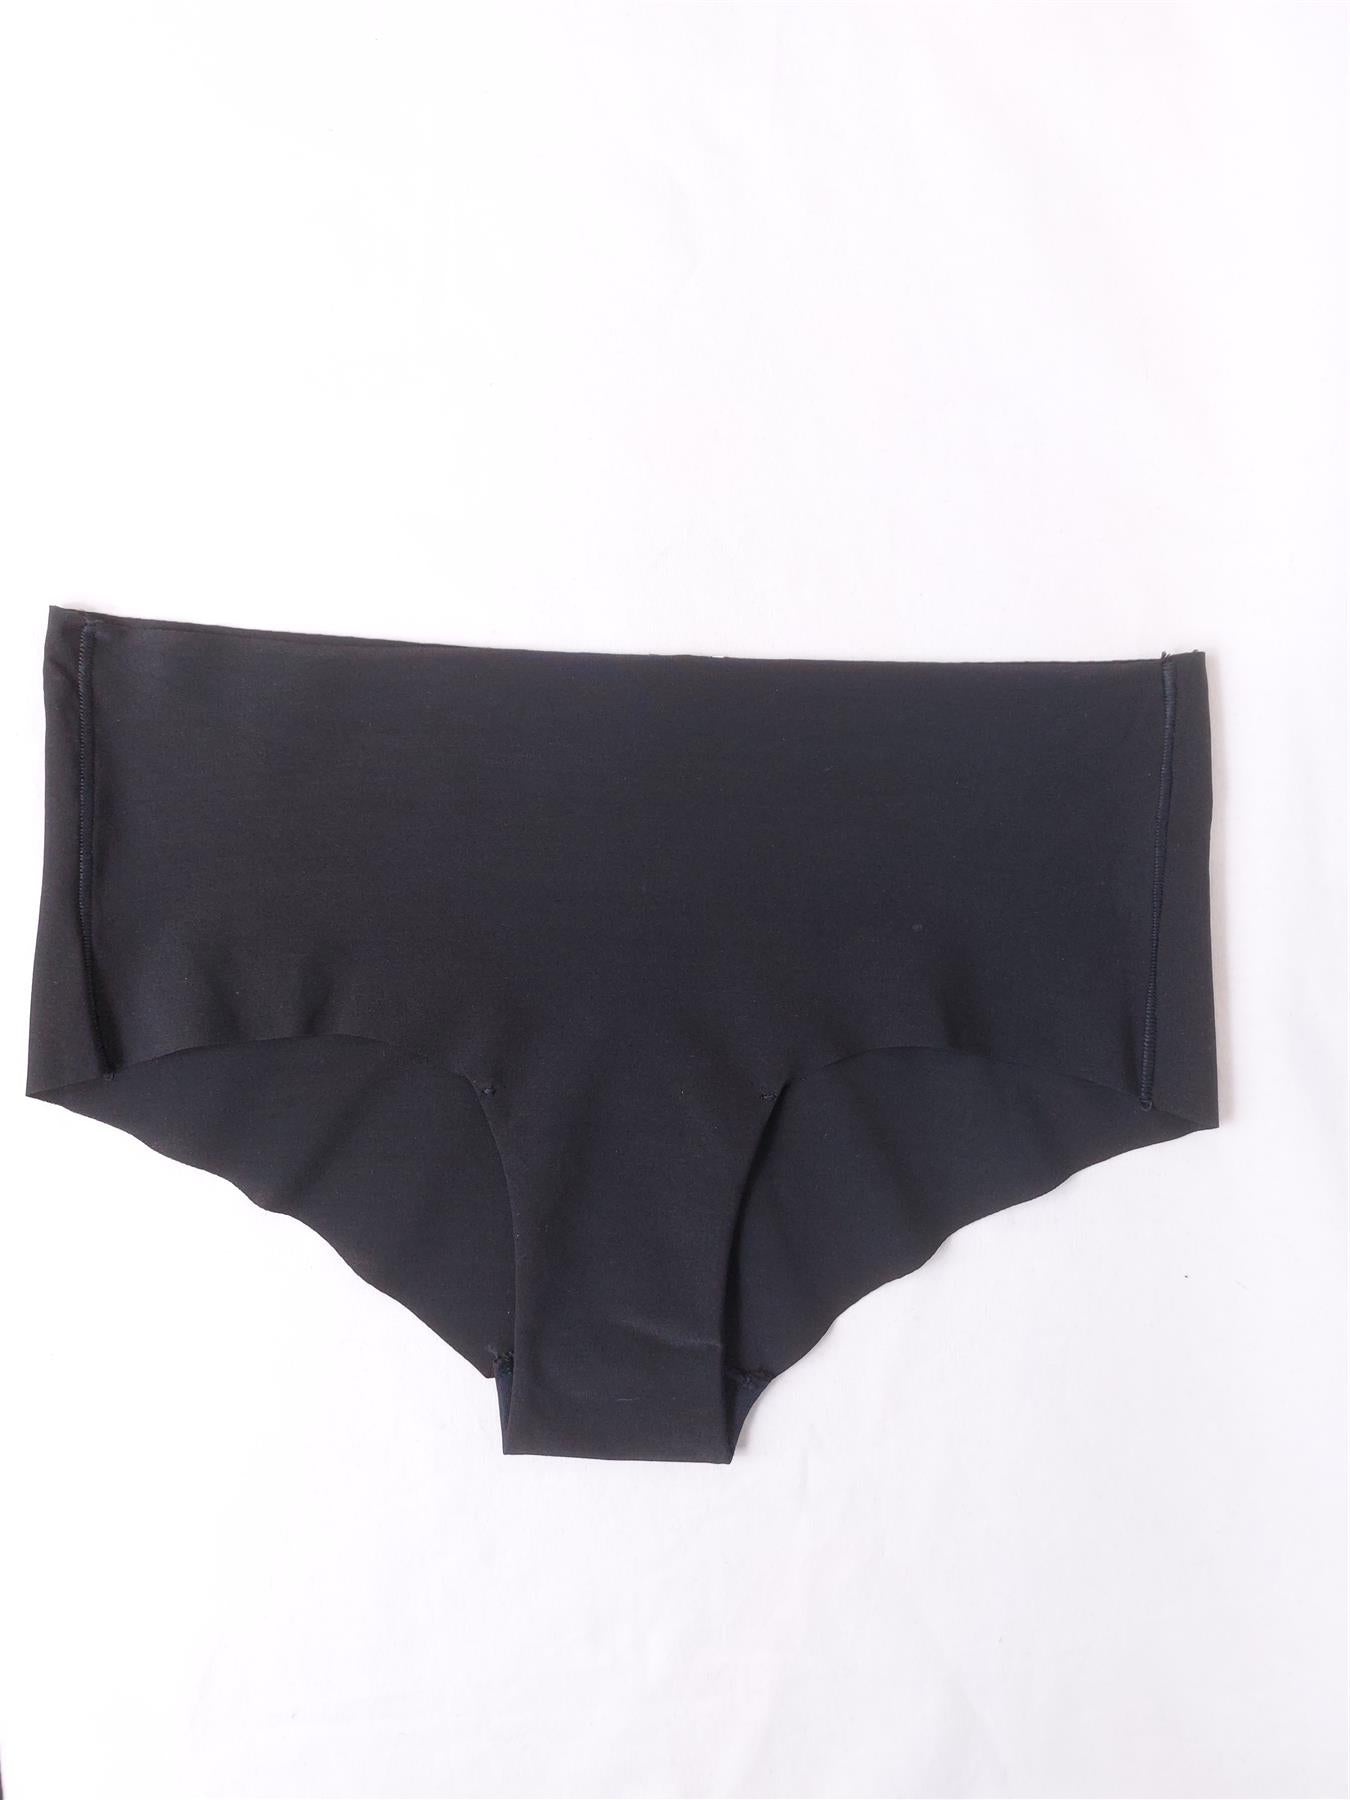 Women's Midi Brief Knickers Laser Cut No VPL Soft Comfort Cotton Lined Black L